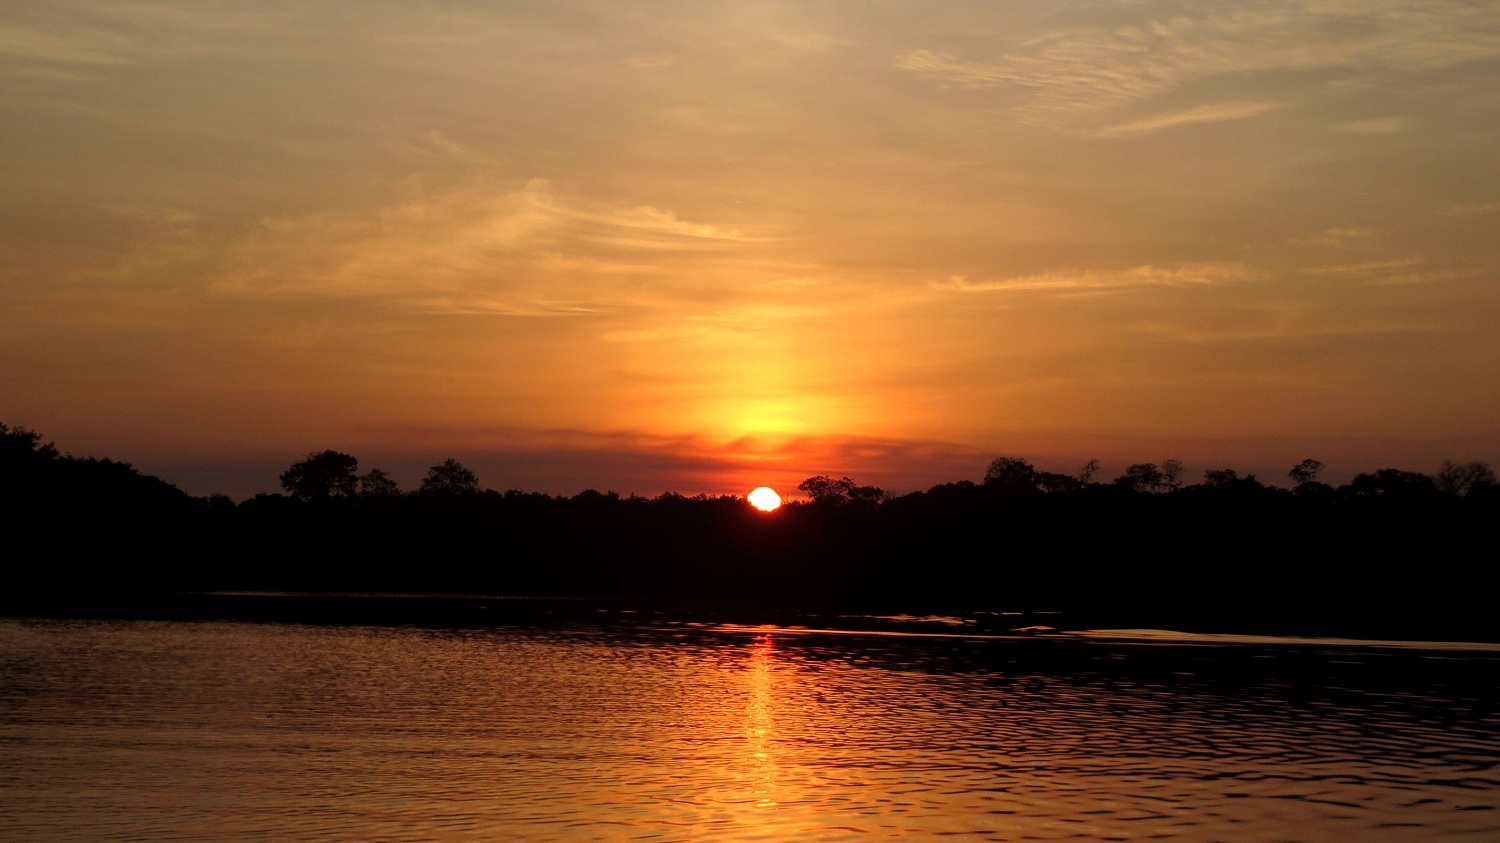 Imagem de um pôr-do-sol com as cores amarelo e laranja, ao fundo de um rio com águas escuras, onde se vê refletida a luz do sol.